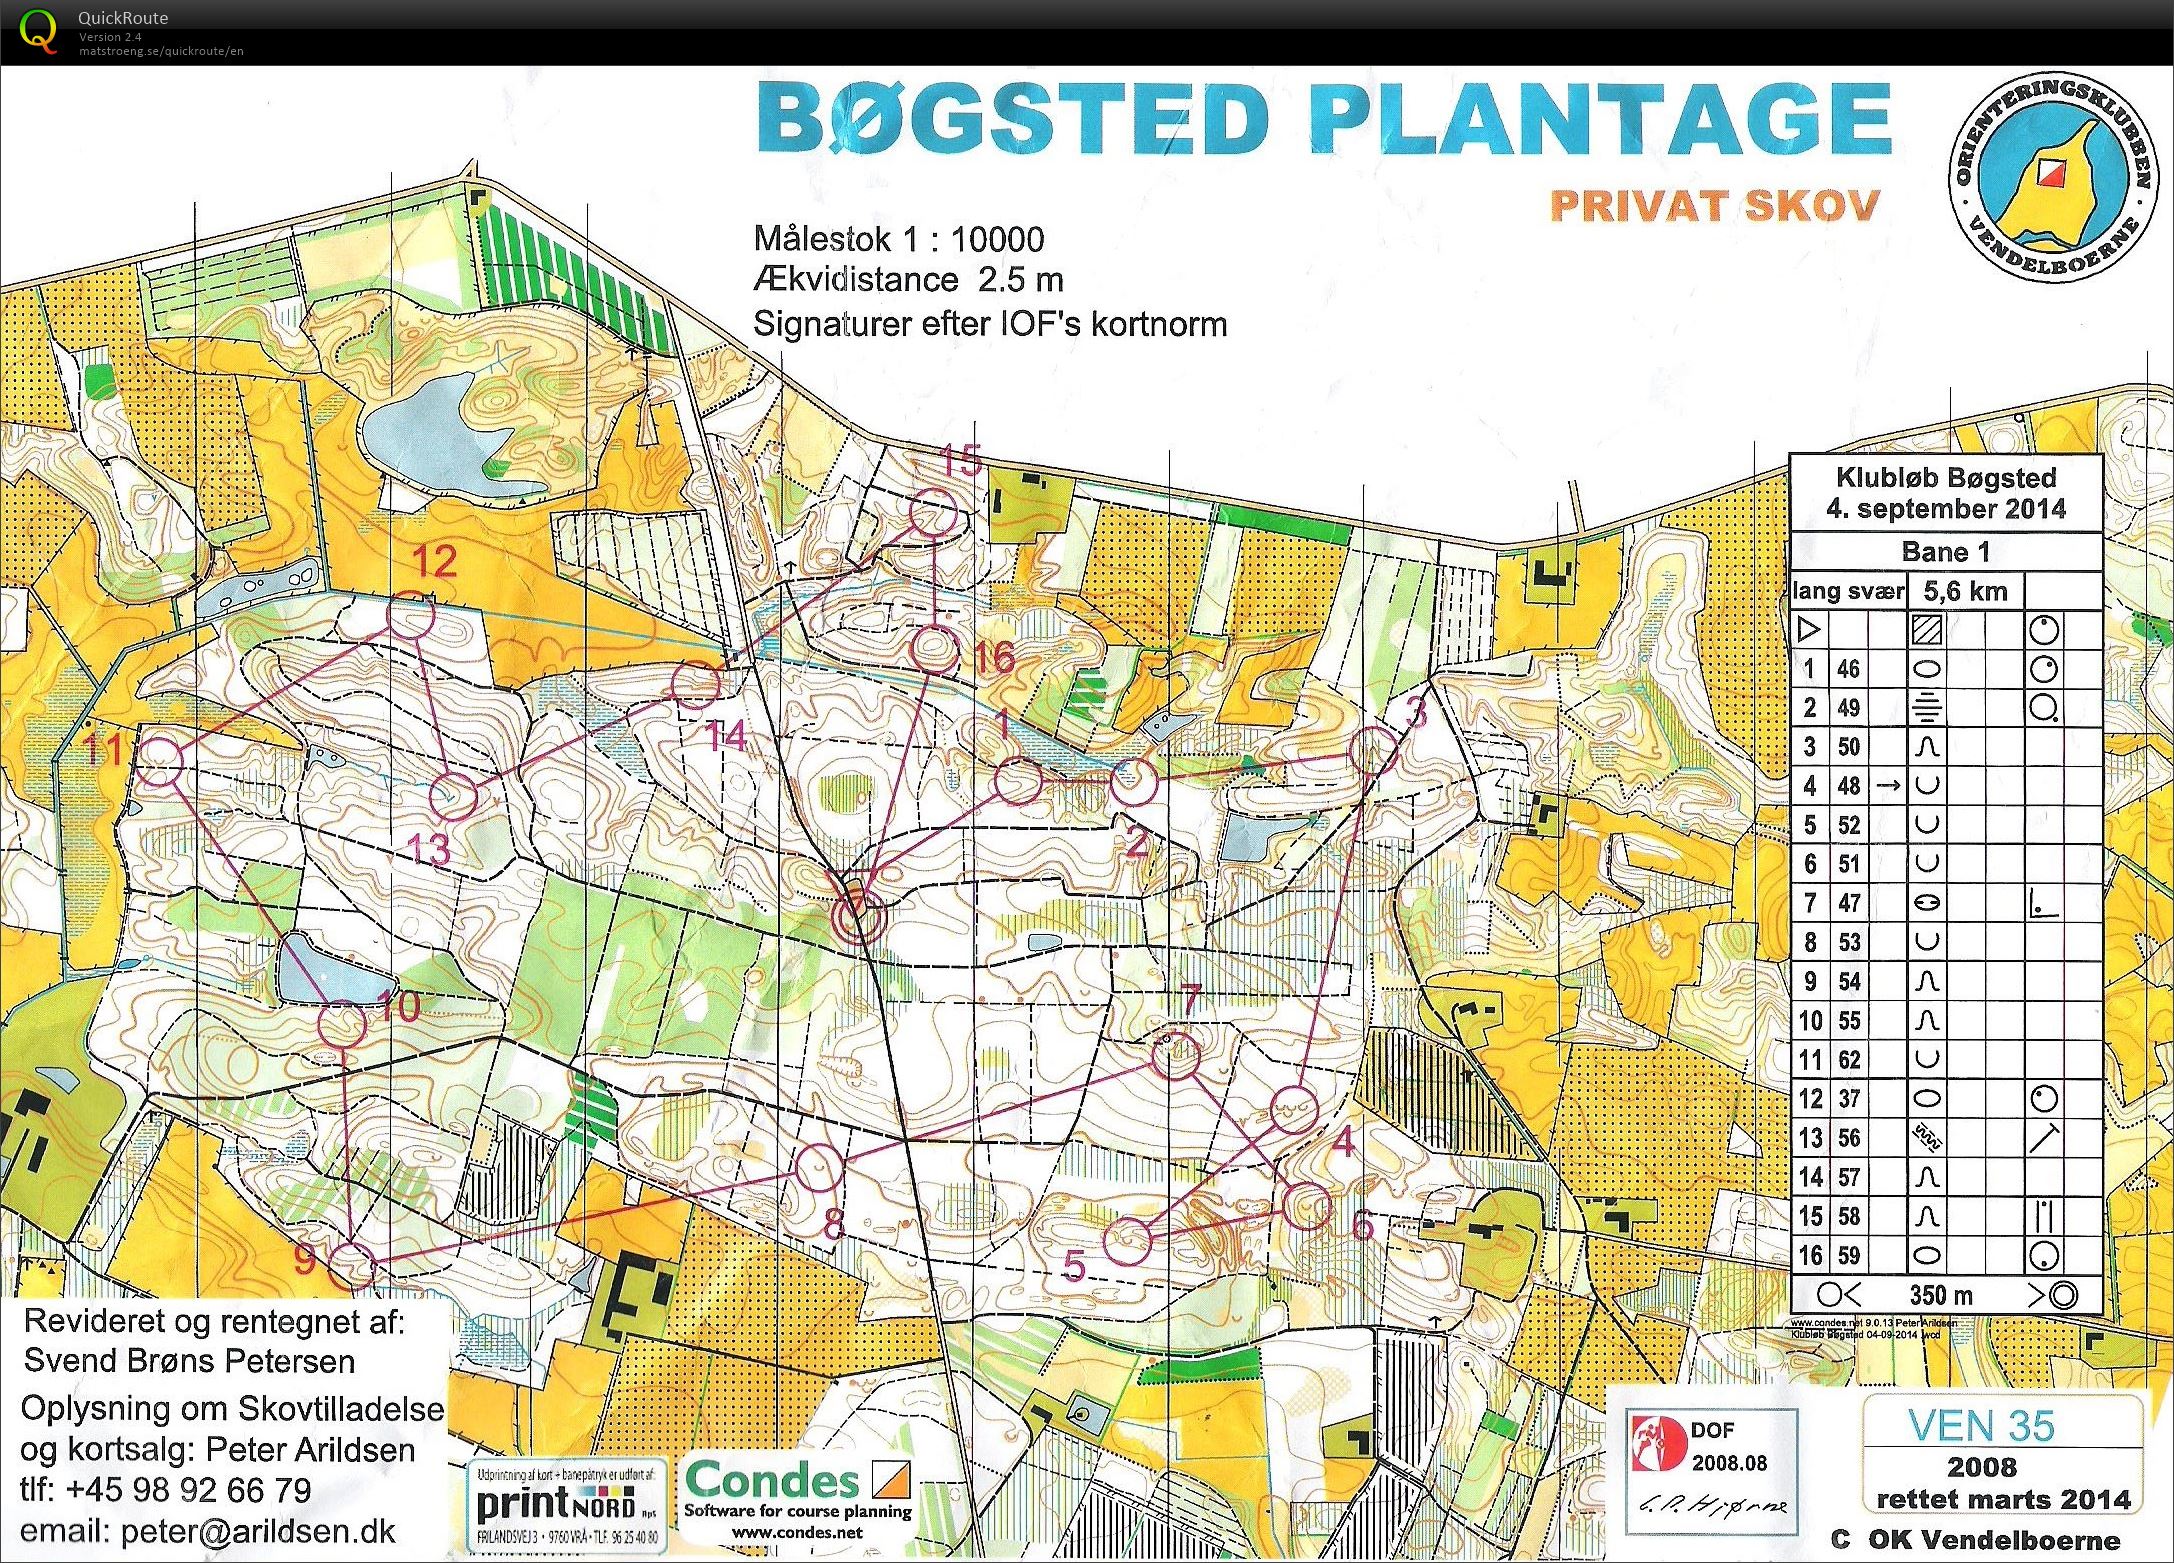 Bøgsted Plantage - Bane 1 (04.09.2014)